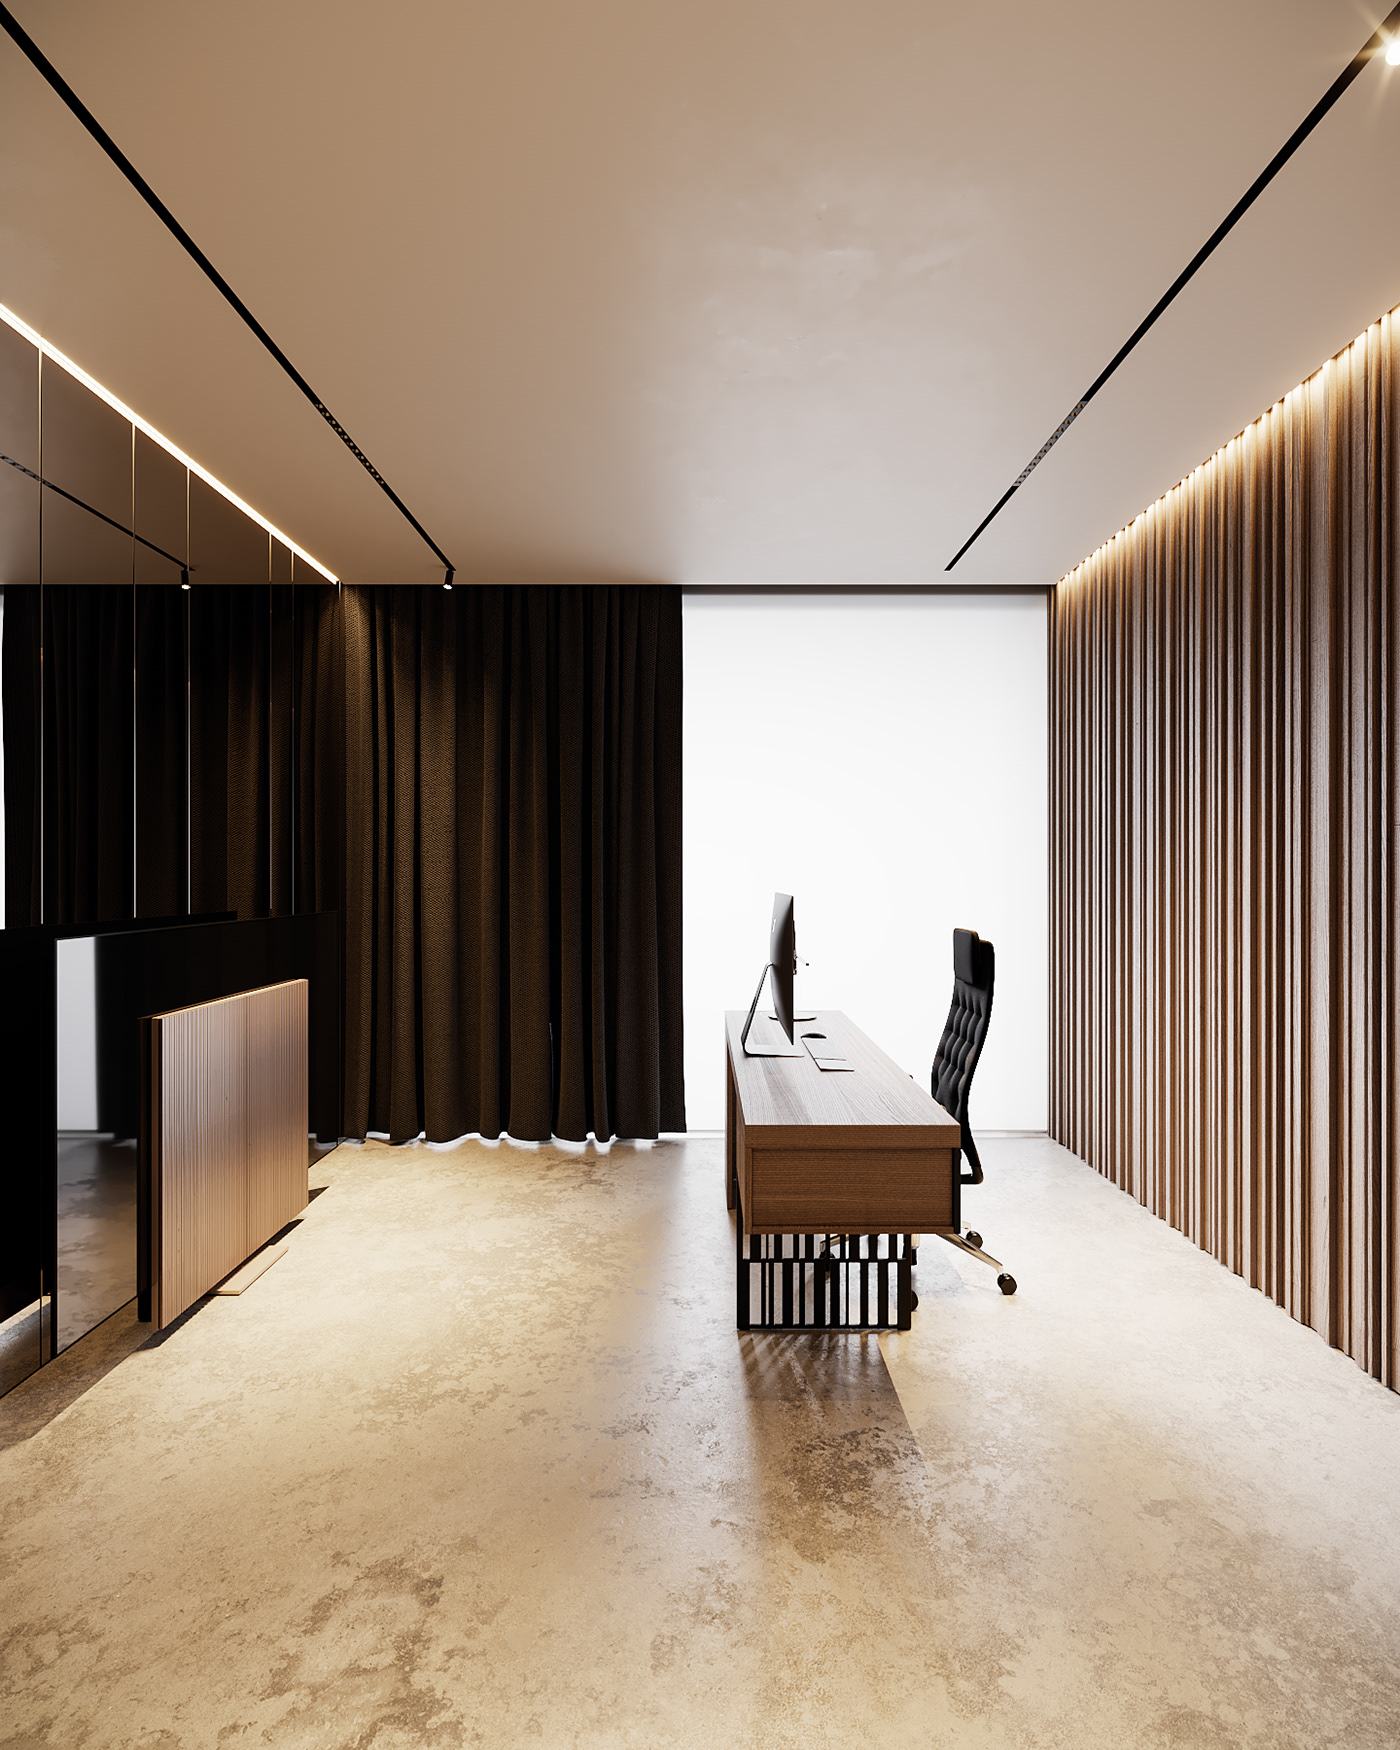 apartment design architecture archviz hilight.design HOUSE DESIGN Interior interior design studio rendering